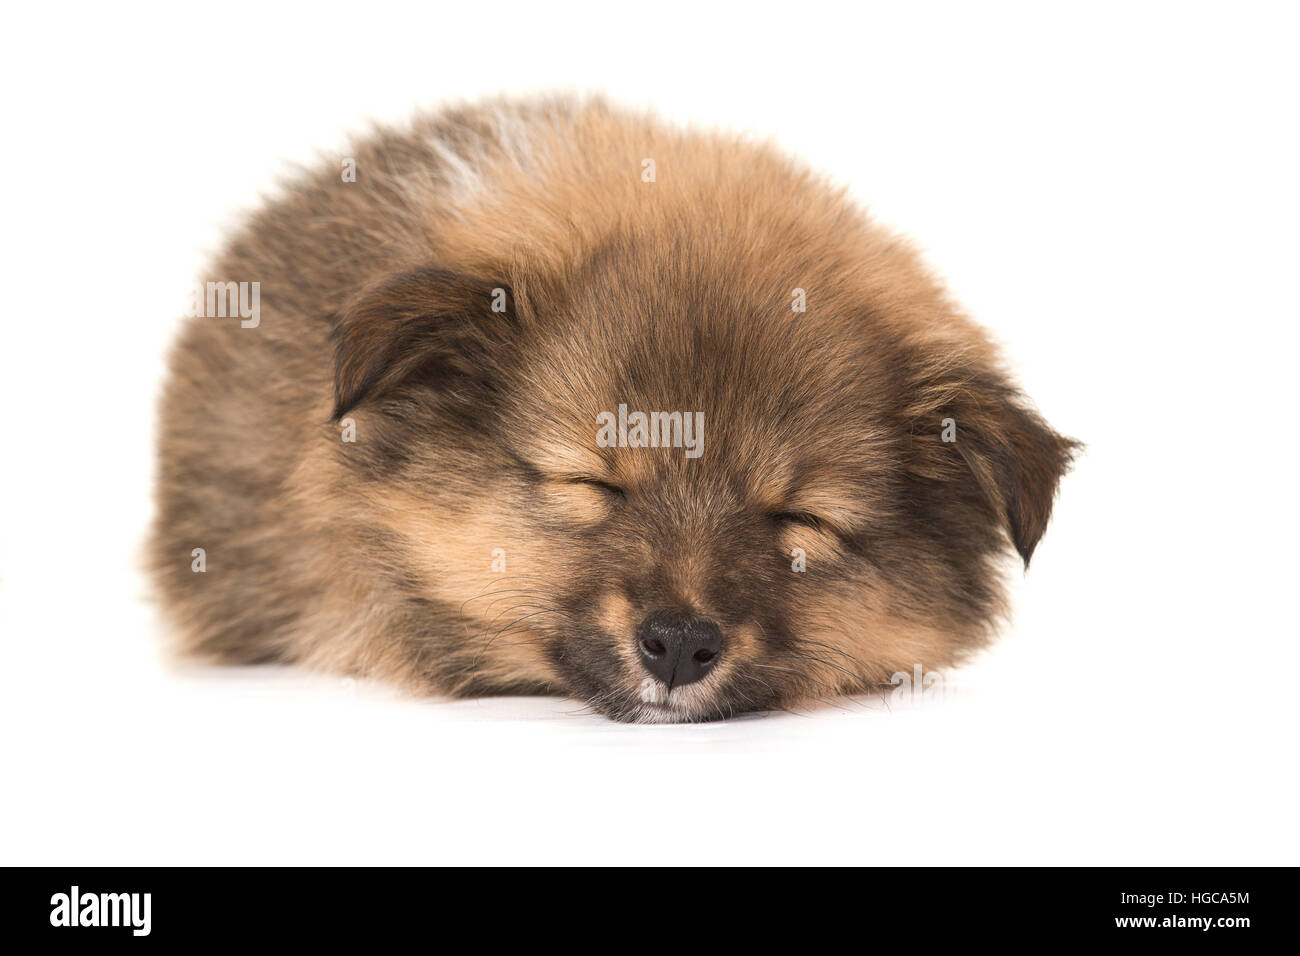 Les Shetland Sheepdog sheltie chiot dormir avec les yeux fermé vu de l'avant, isolé sur fond blanc Banque D'Images